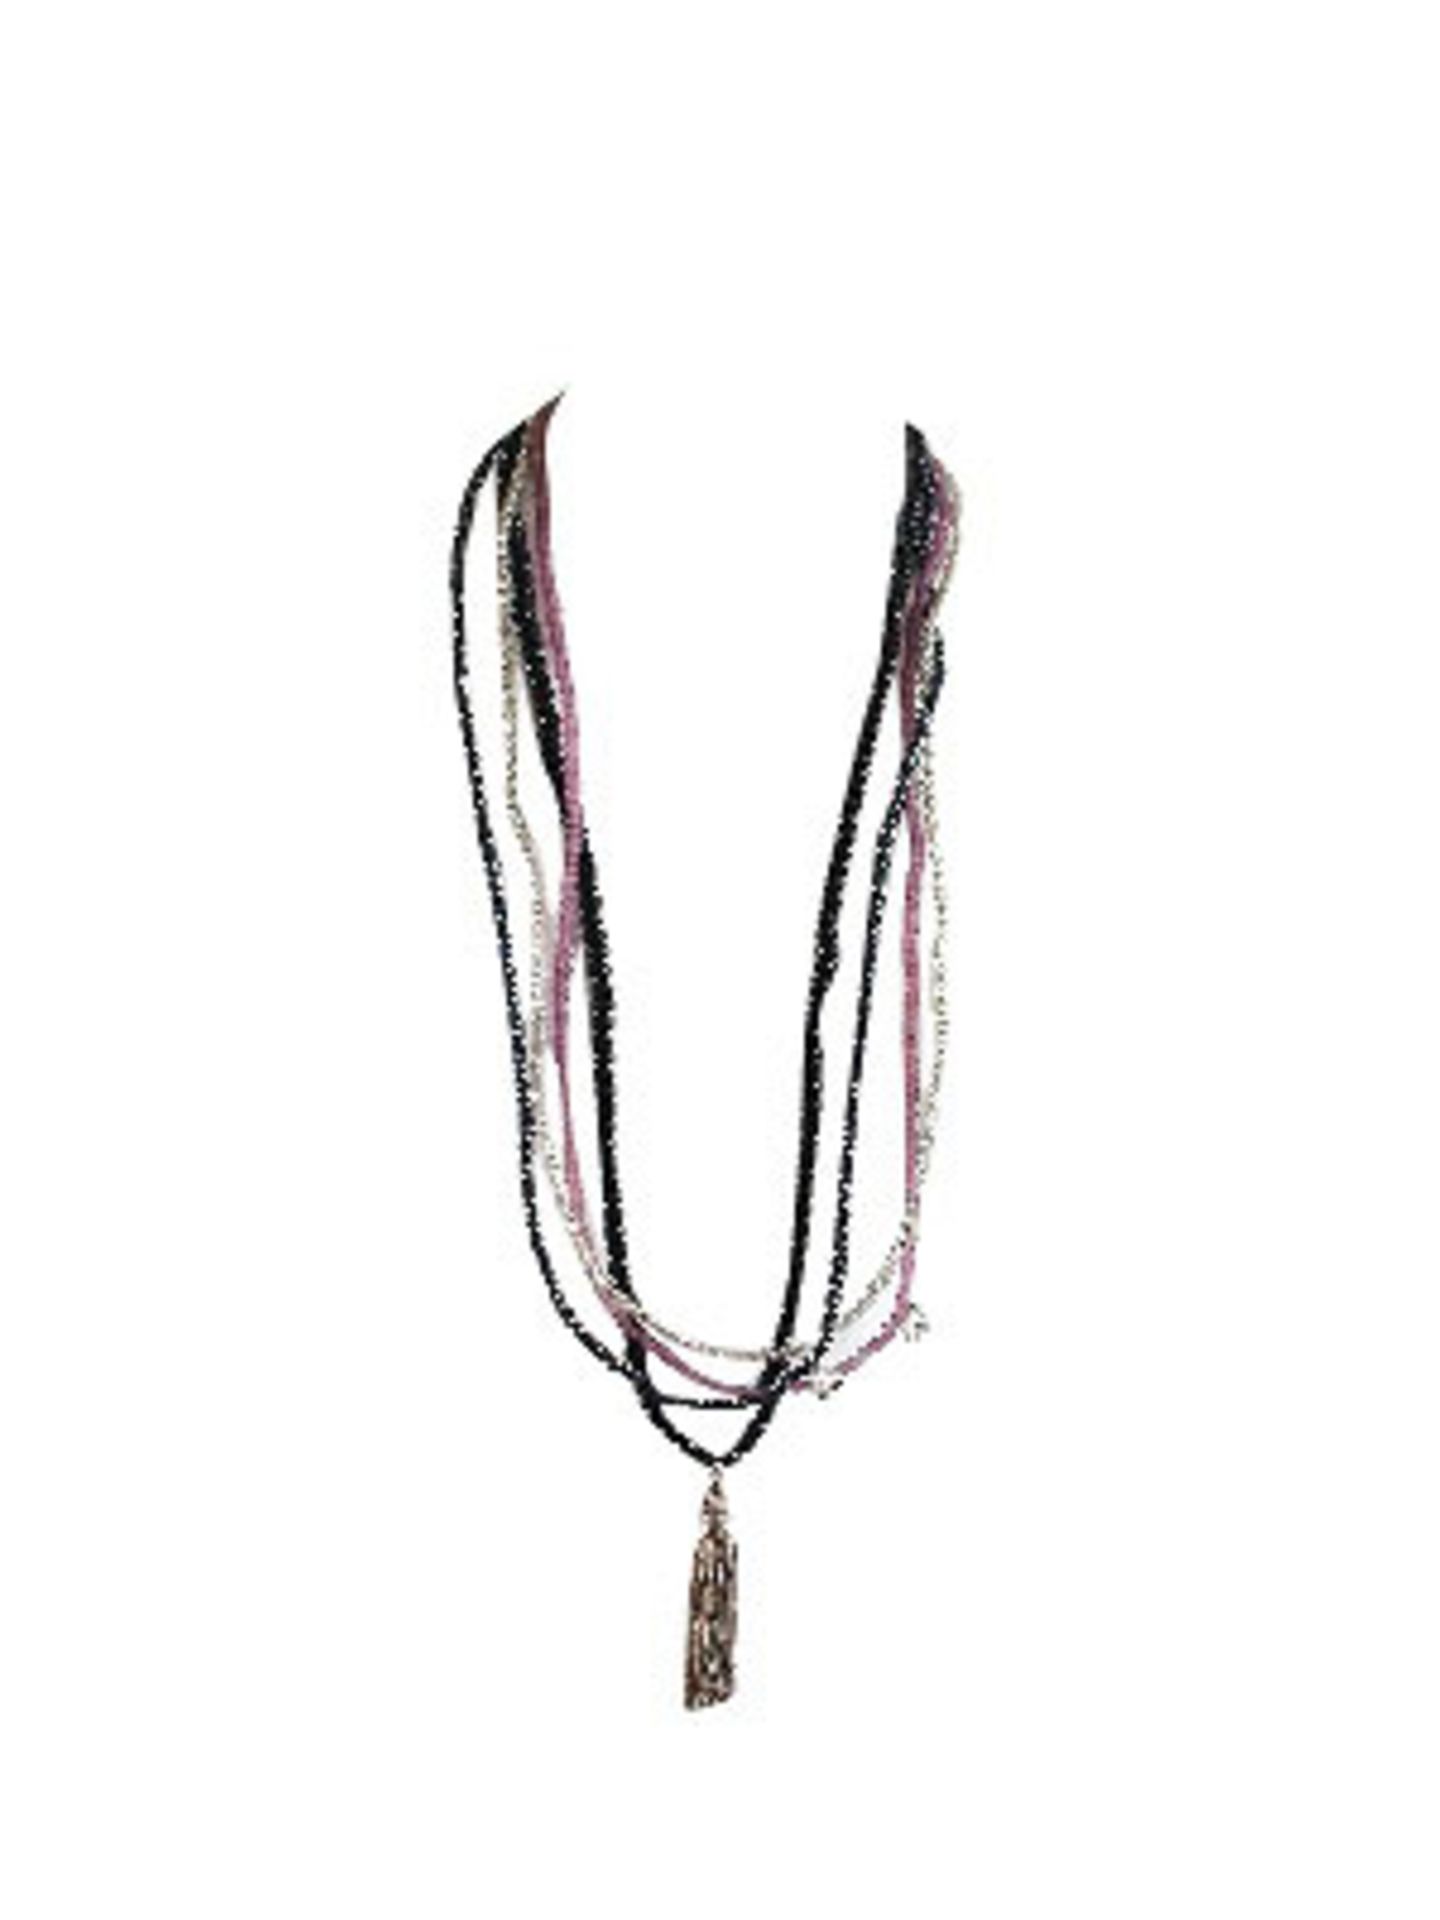 Lange Perlenketten in Schwarz- und Rosétönen mit Anhänger von Escapulario, um 60 Euro. Über www.escapulario.com.